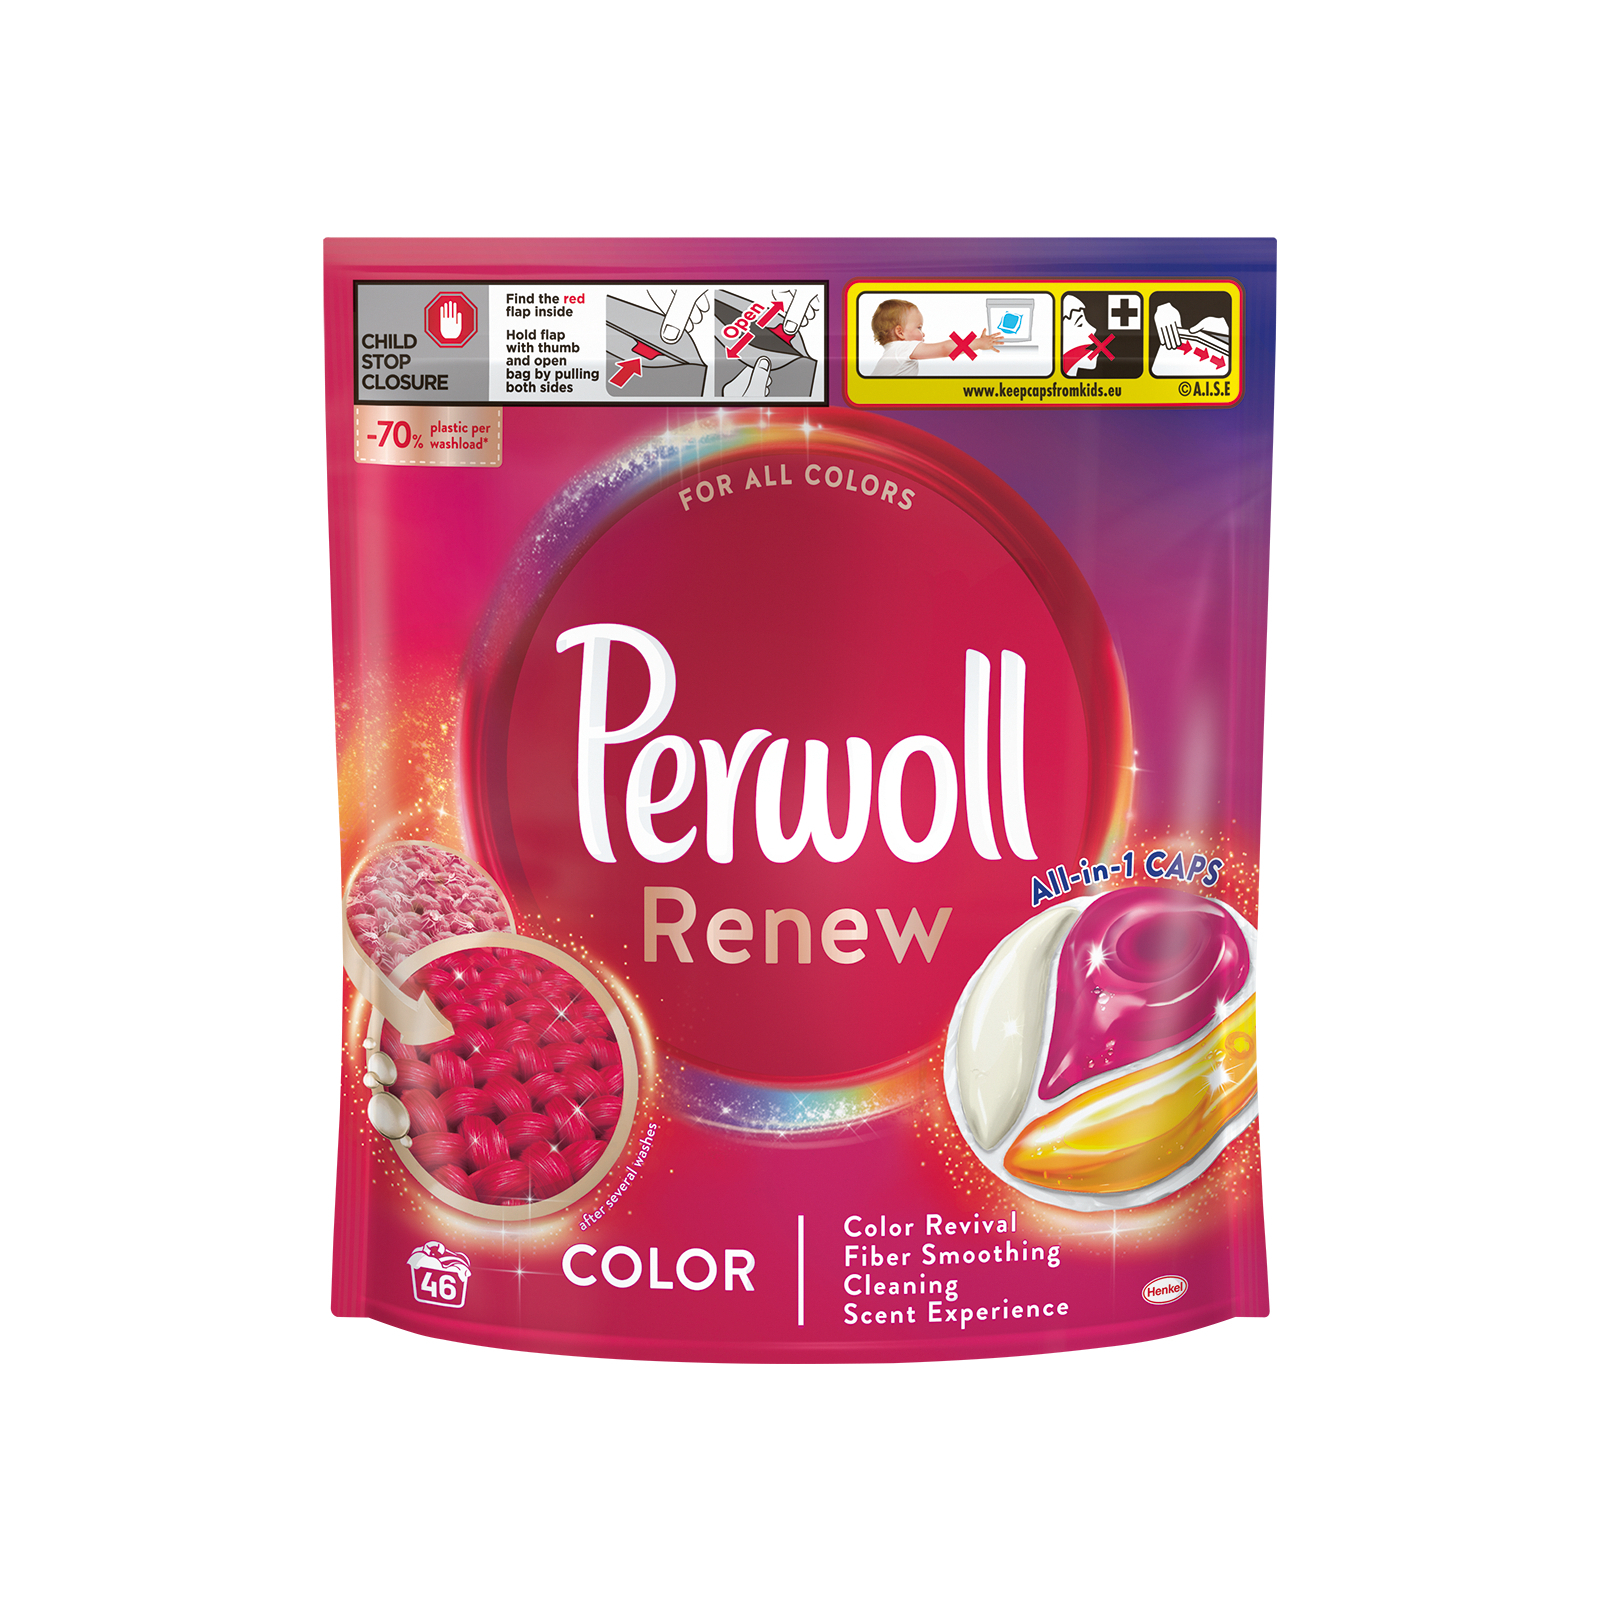 Капсулы для стирки Perwoll Renew Color для цветных вещей 21 шт. (9000101569445)